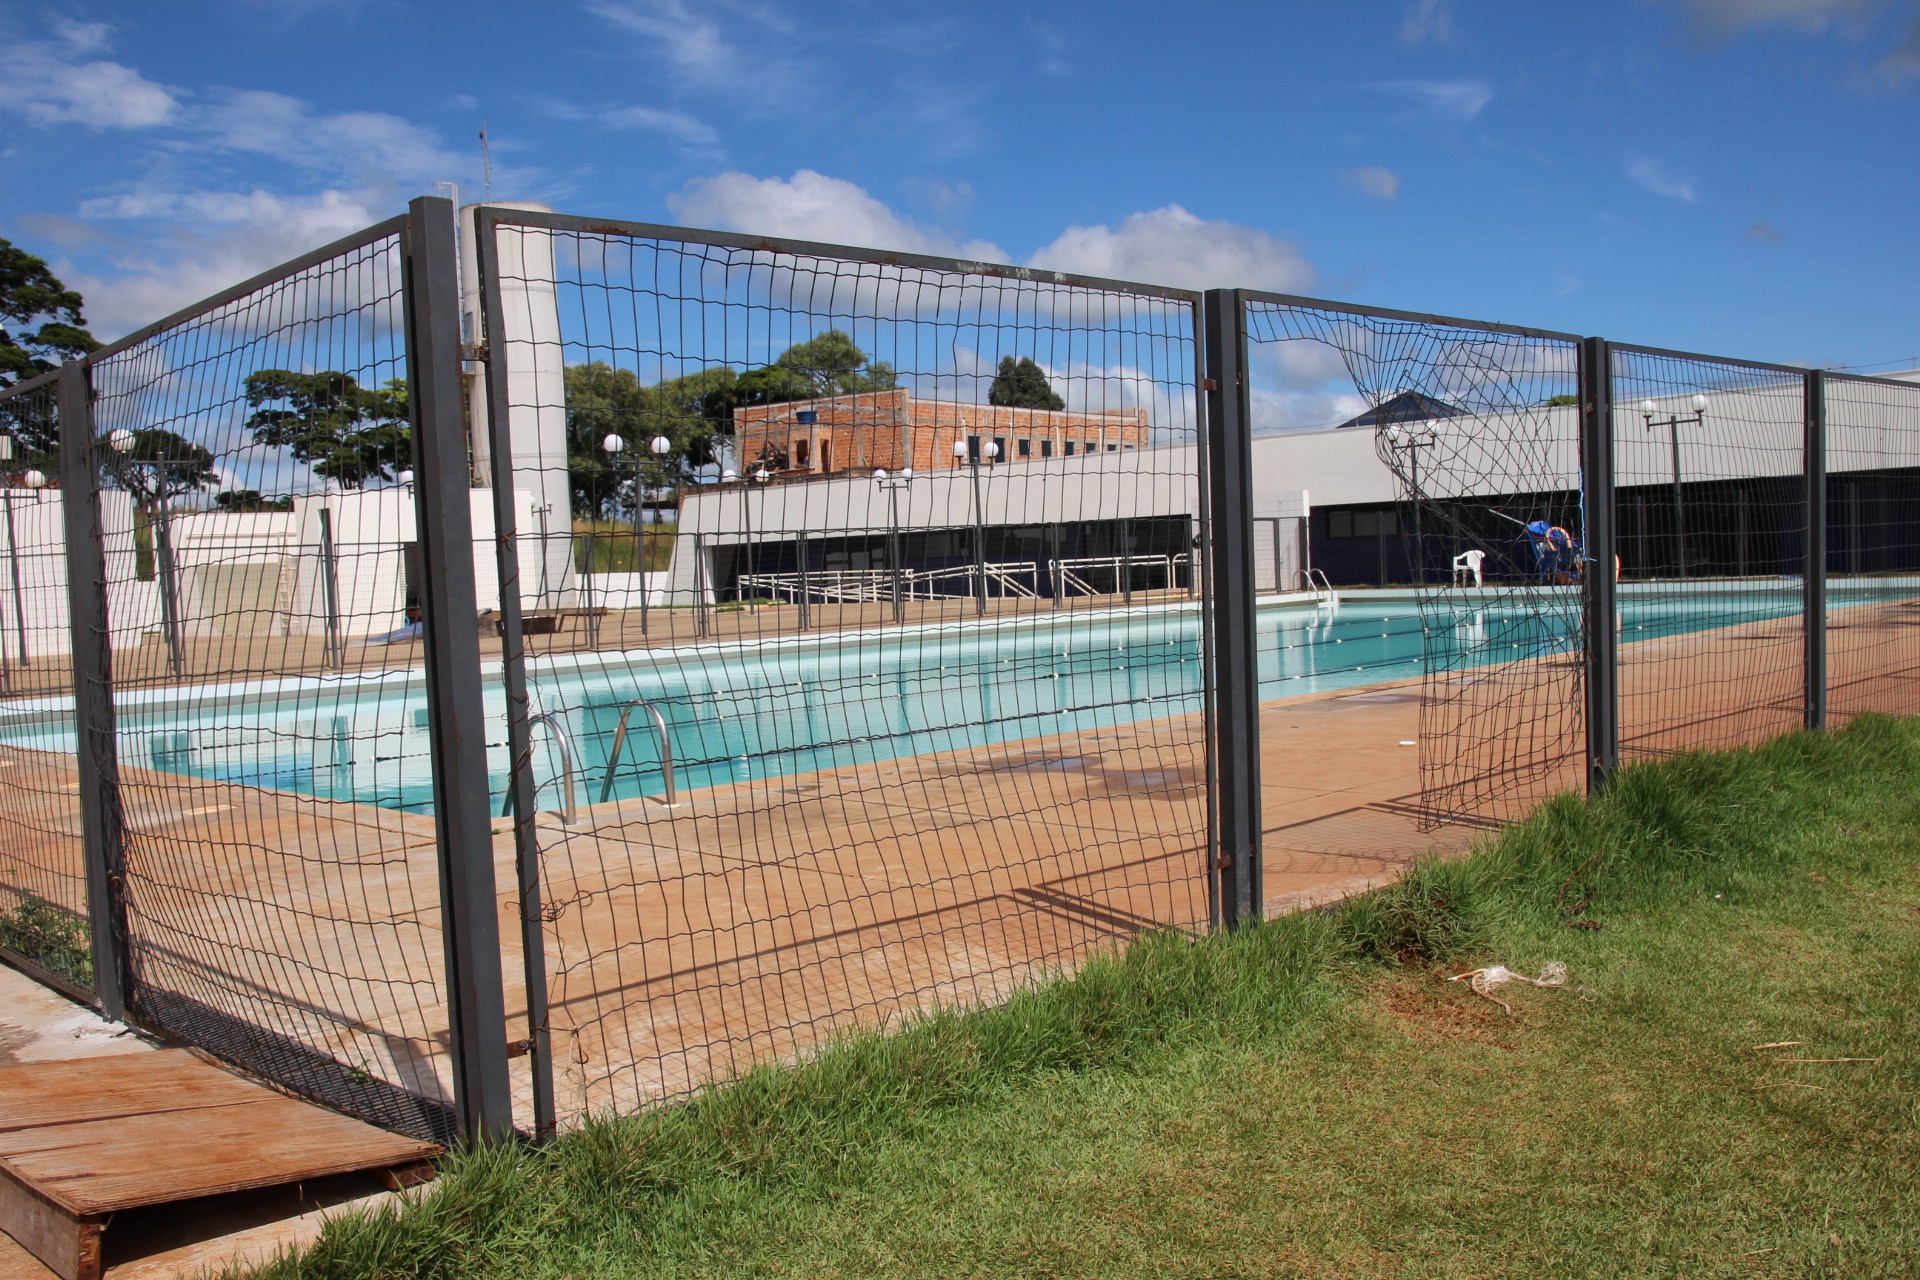 Vândalos arrebentaram alambrado da piscina do Centro da Juventude, em Apucarana - Foto: Dirceu Lopes